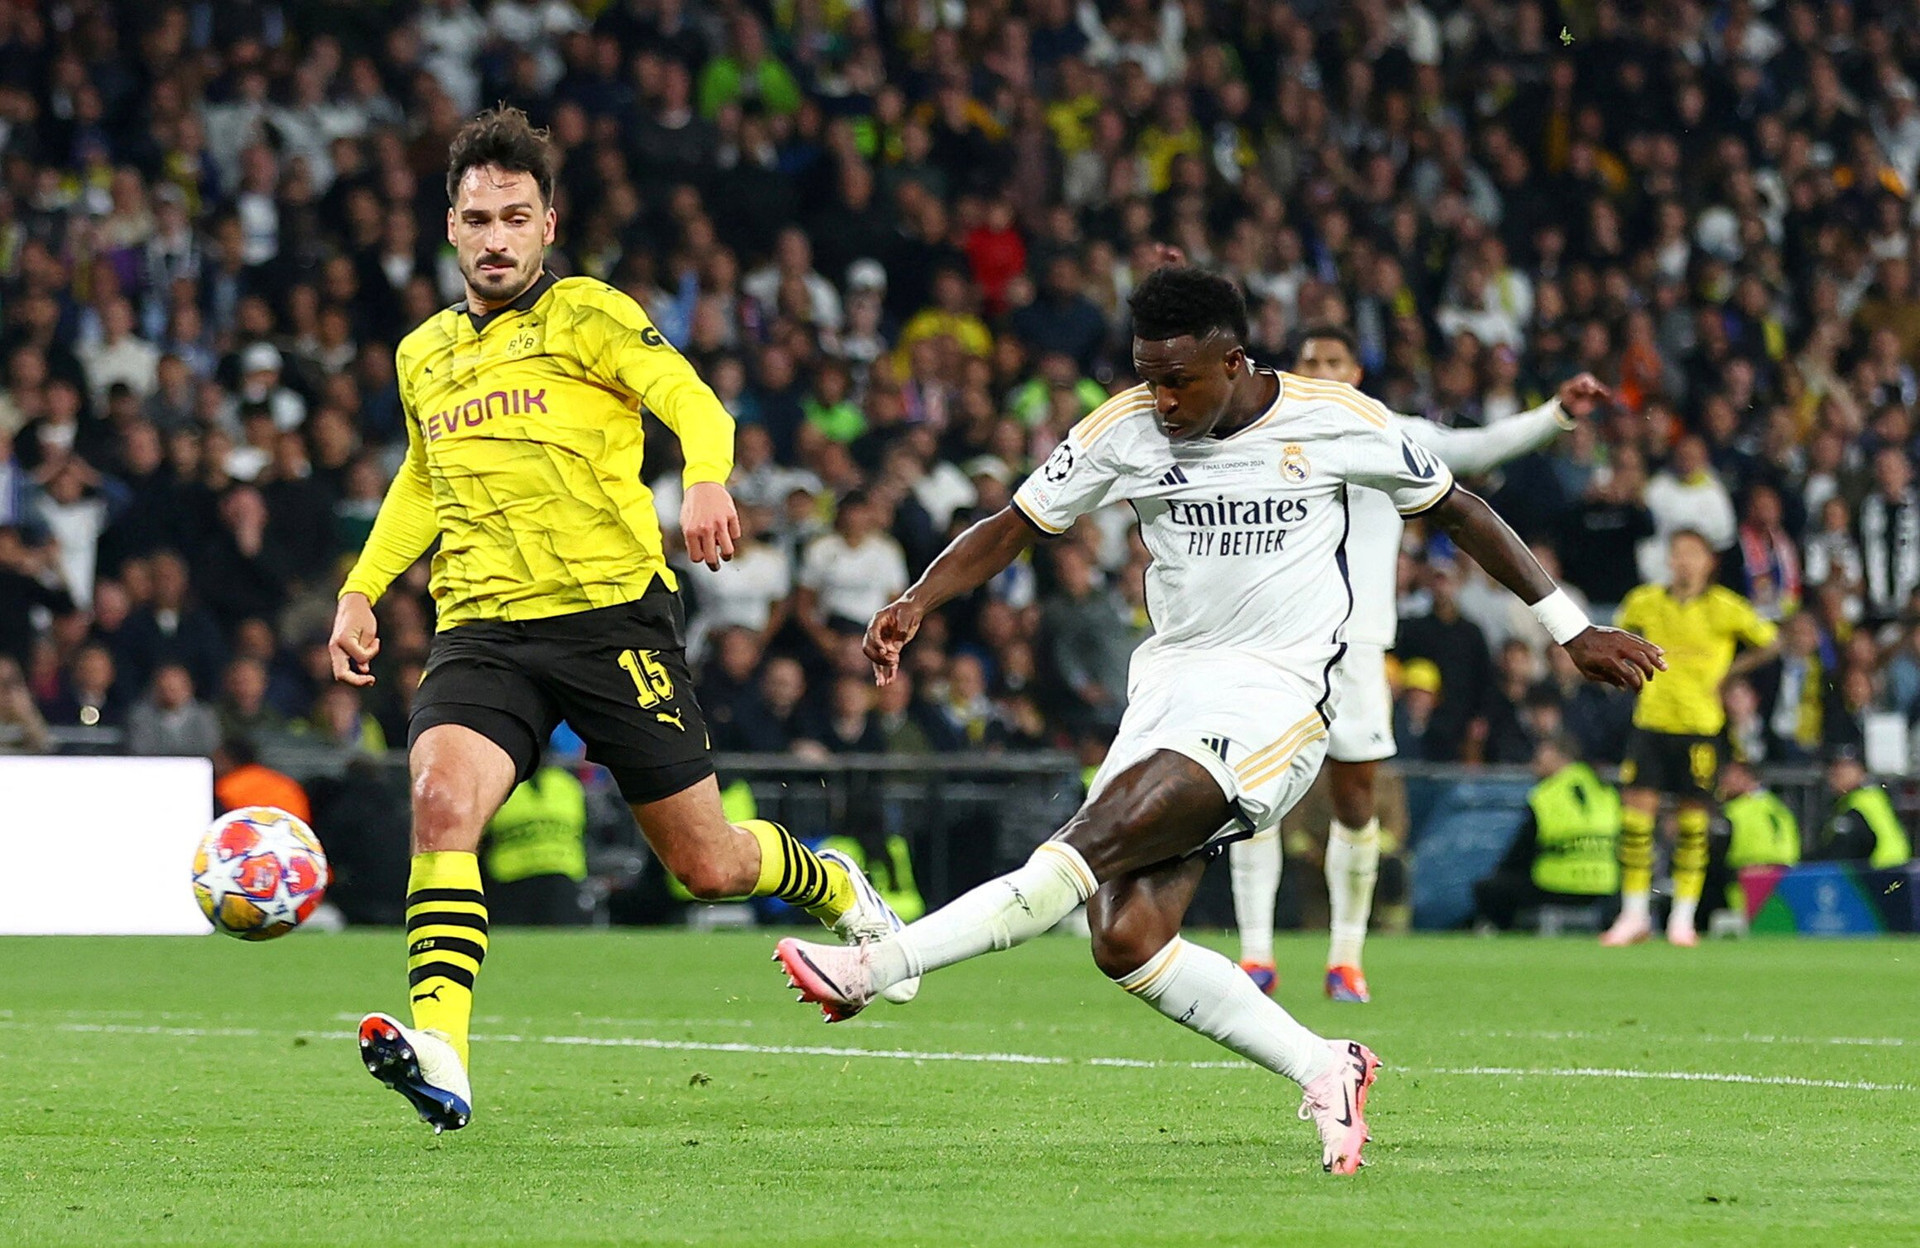 Vinicius Jr chớp thời cơ sau sai lầm của hàng thủ Dortmund. Tiền đạo người Brazil ghi bàn bàn thắng nâng tỷ số lên 2-0 ở phút 83. (Ảnh: Reuters)